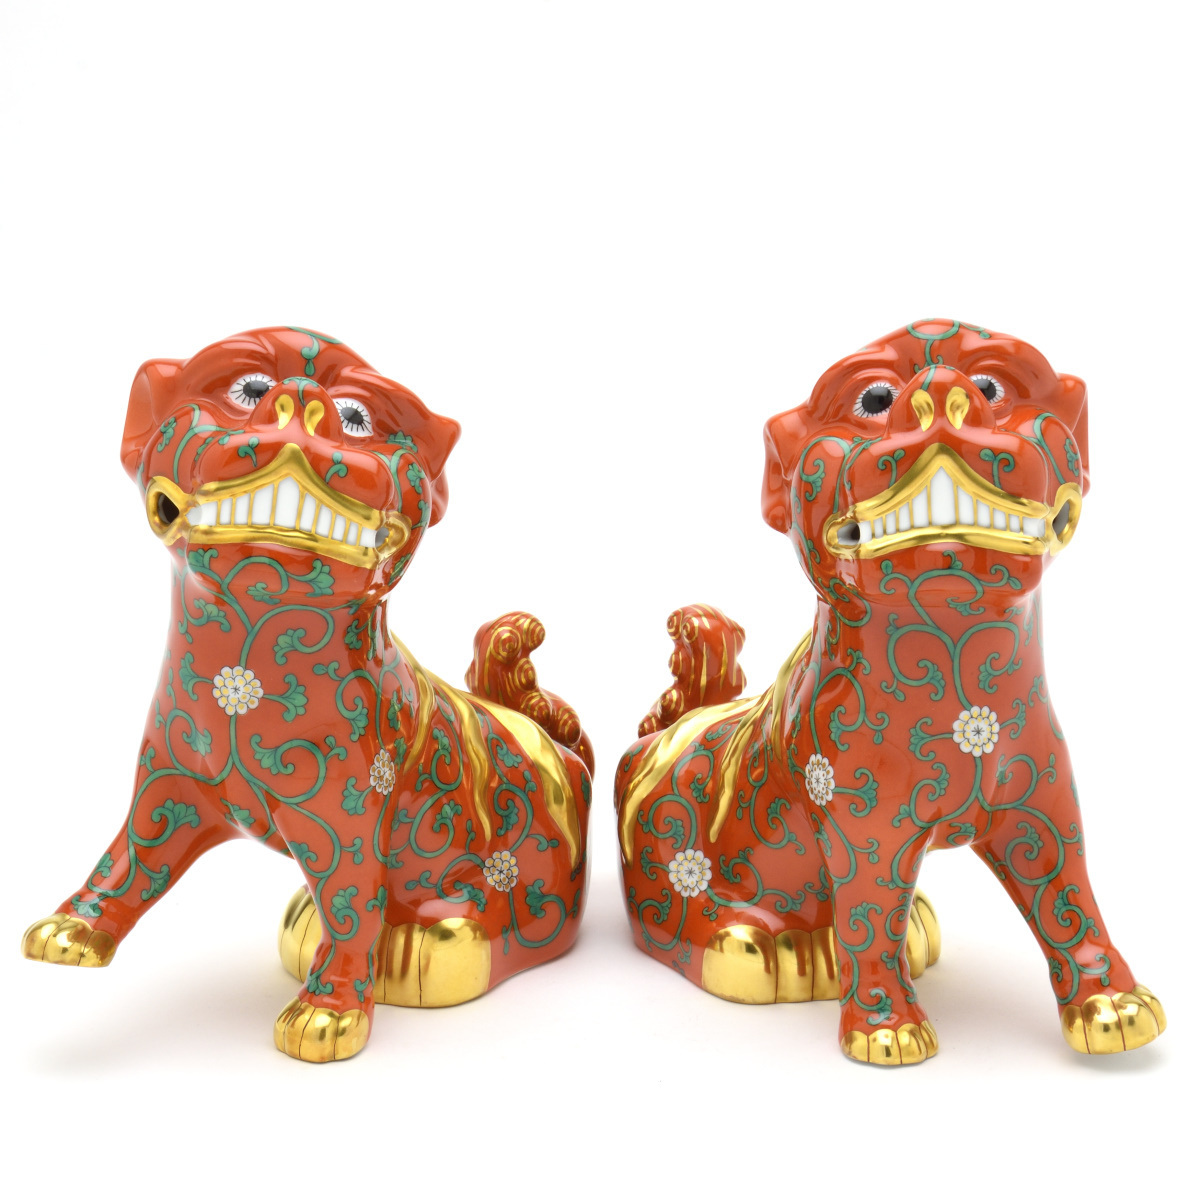 ヘレンド(Herend) 狛犬(ペア) 西安の赤 こまいぬ 手描き 磁器製 フィギュリン 置物 飾り物 ハンガリー製 新品